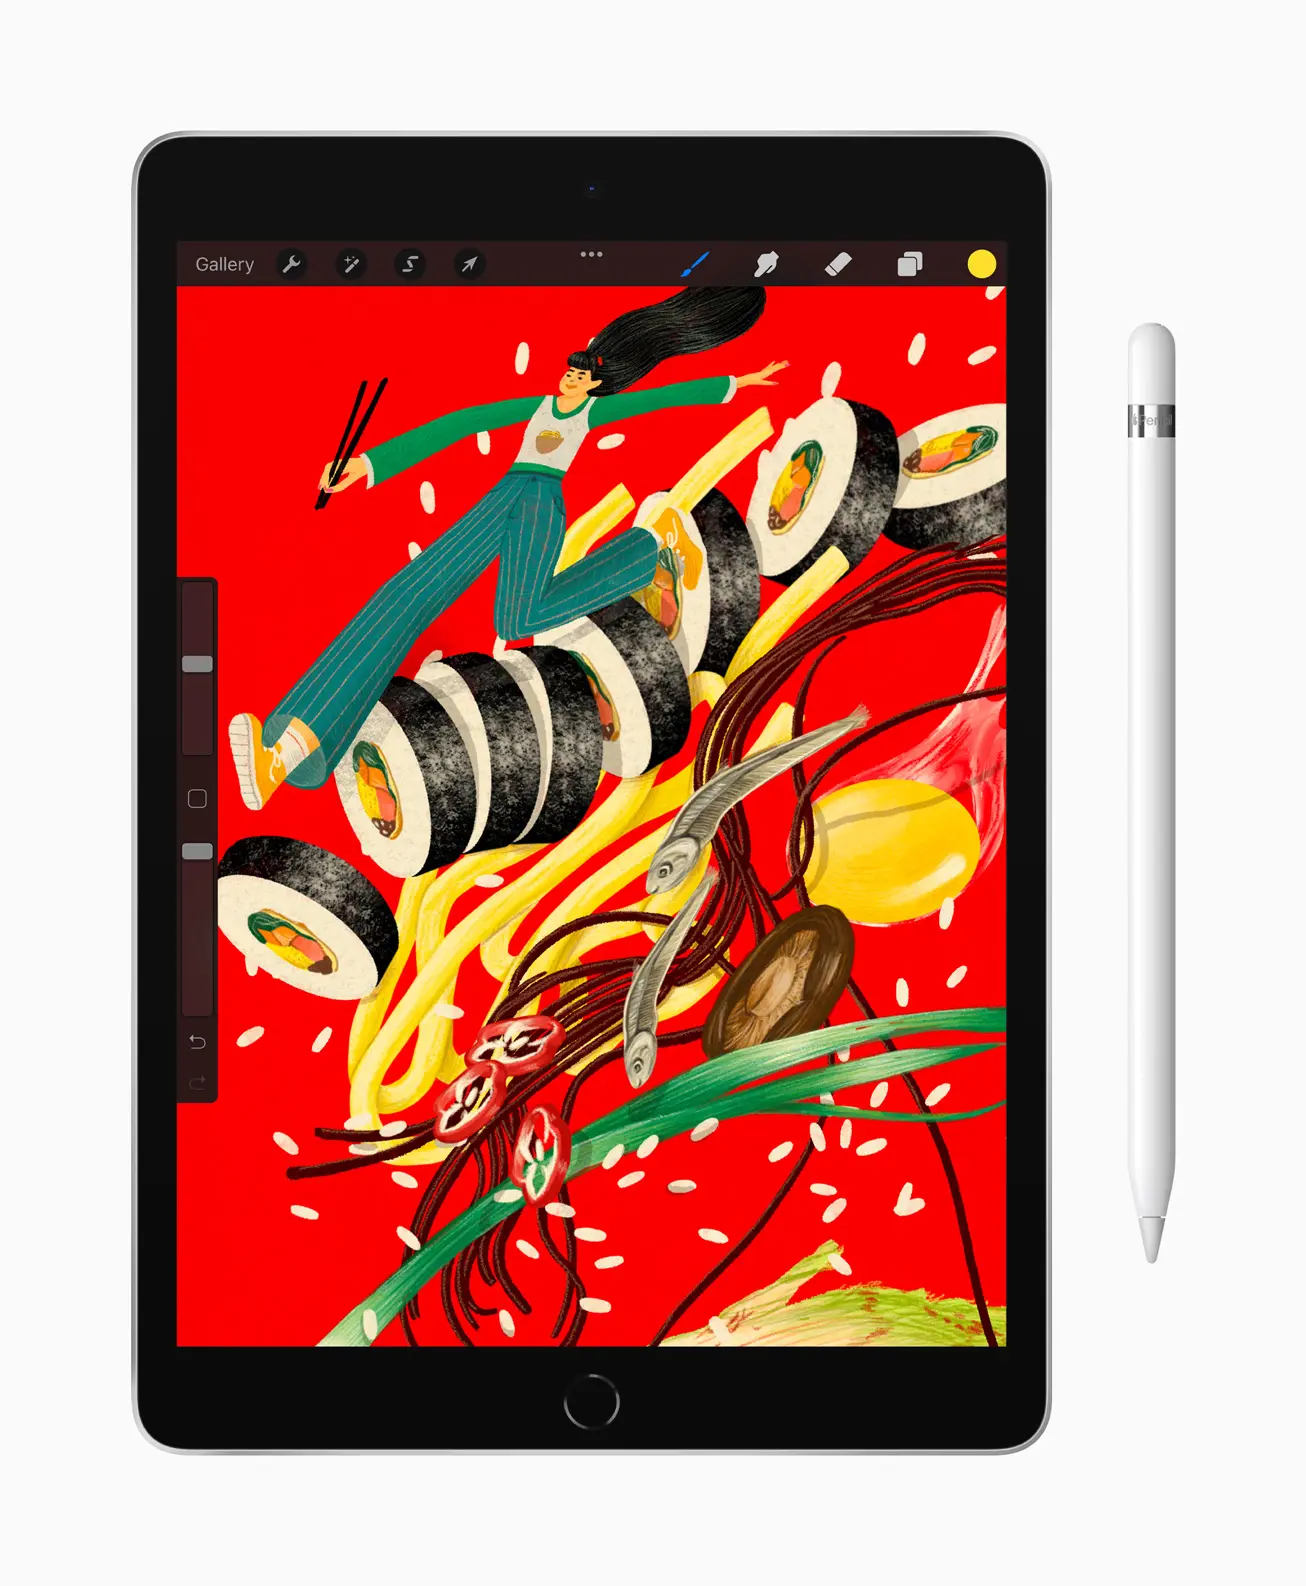 ontop.vn Apple iPad 10 2 inch ProCreate Pencil 09142021